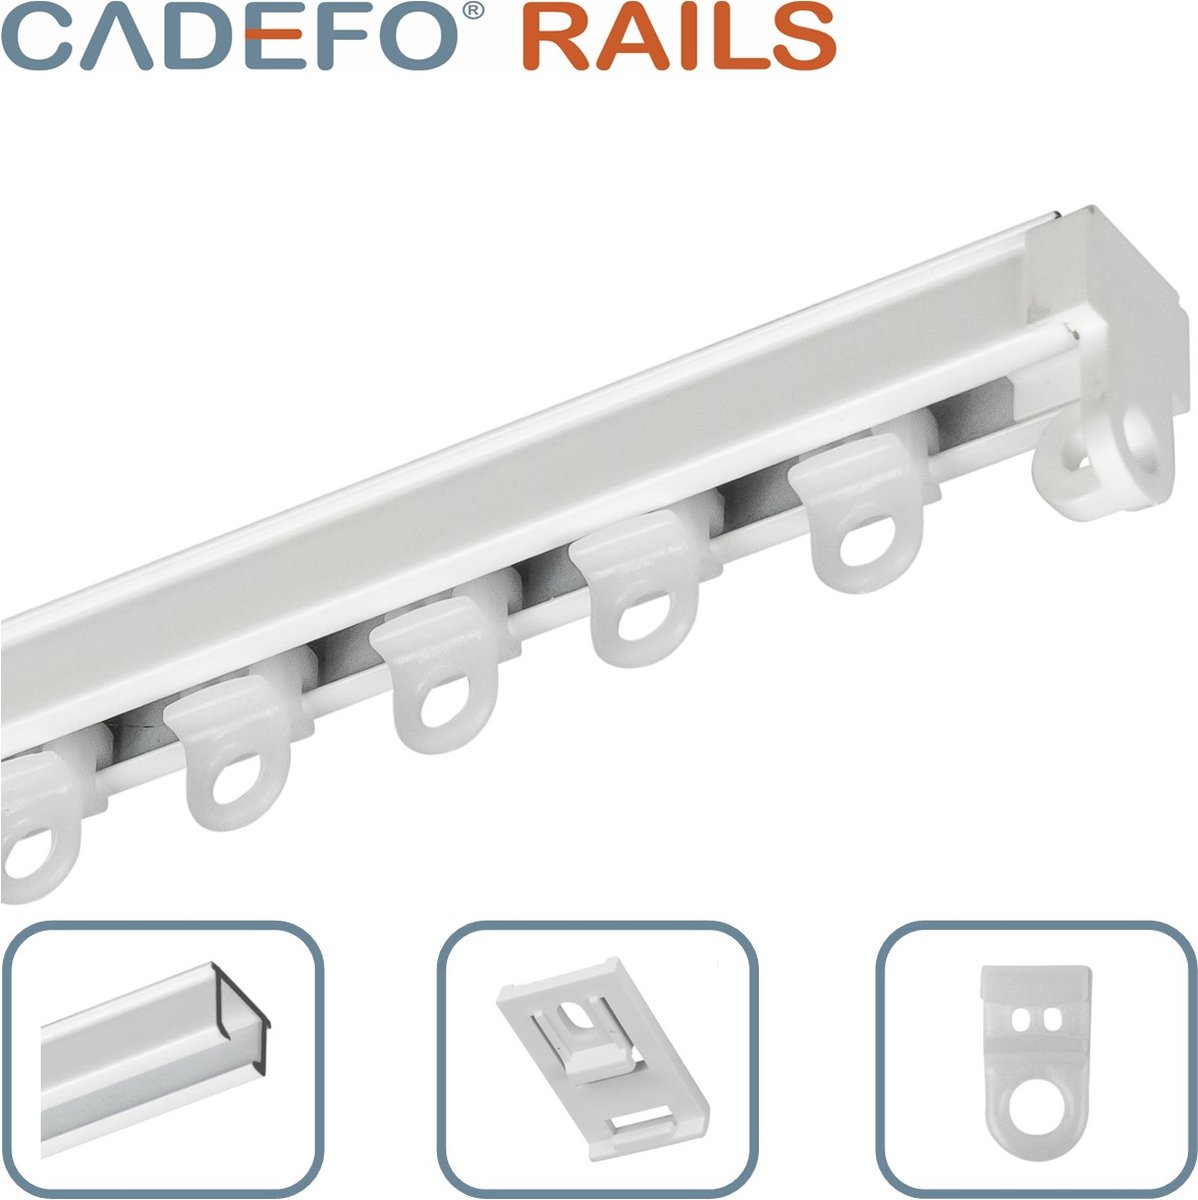 CADEFO RAILS (101 - 150 cm) Gordijnrails - Compleet op maat! - UIT 1 STUK - Leverbaar tot 6 meter - Plafondbevestiging - Lengte 102 cm